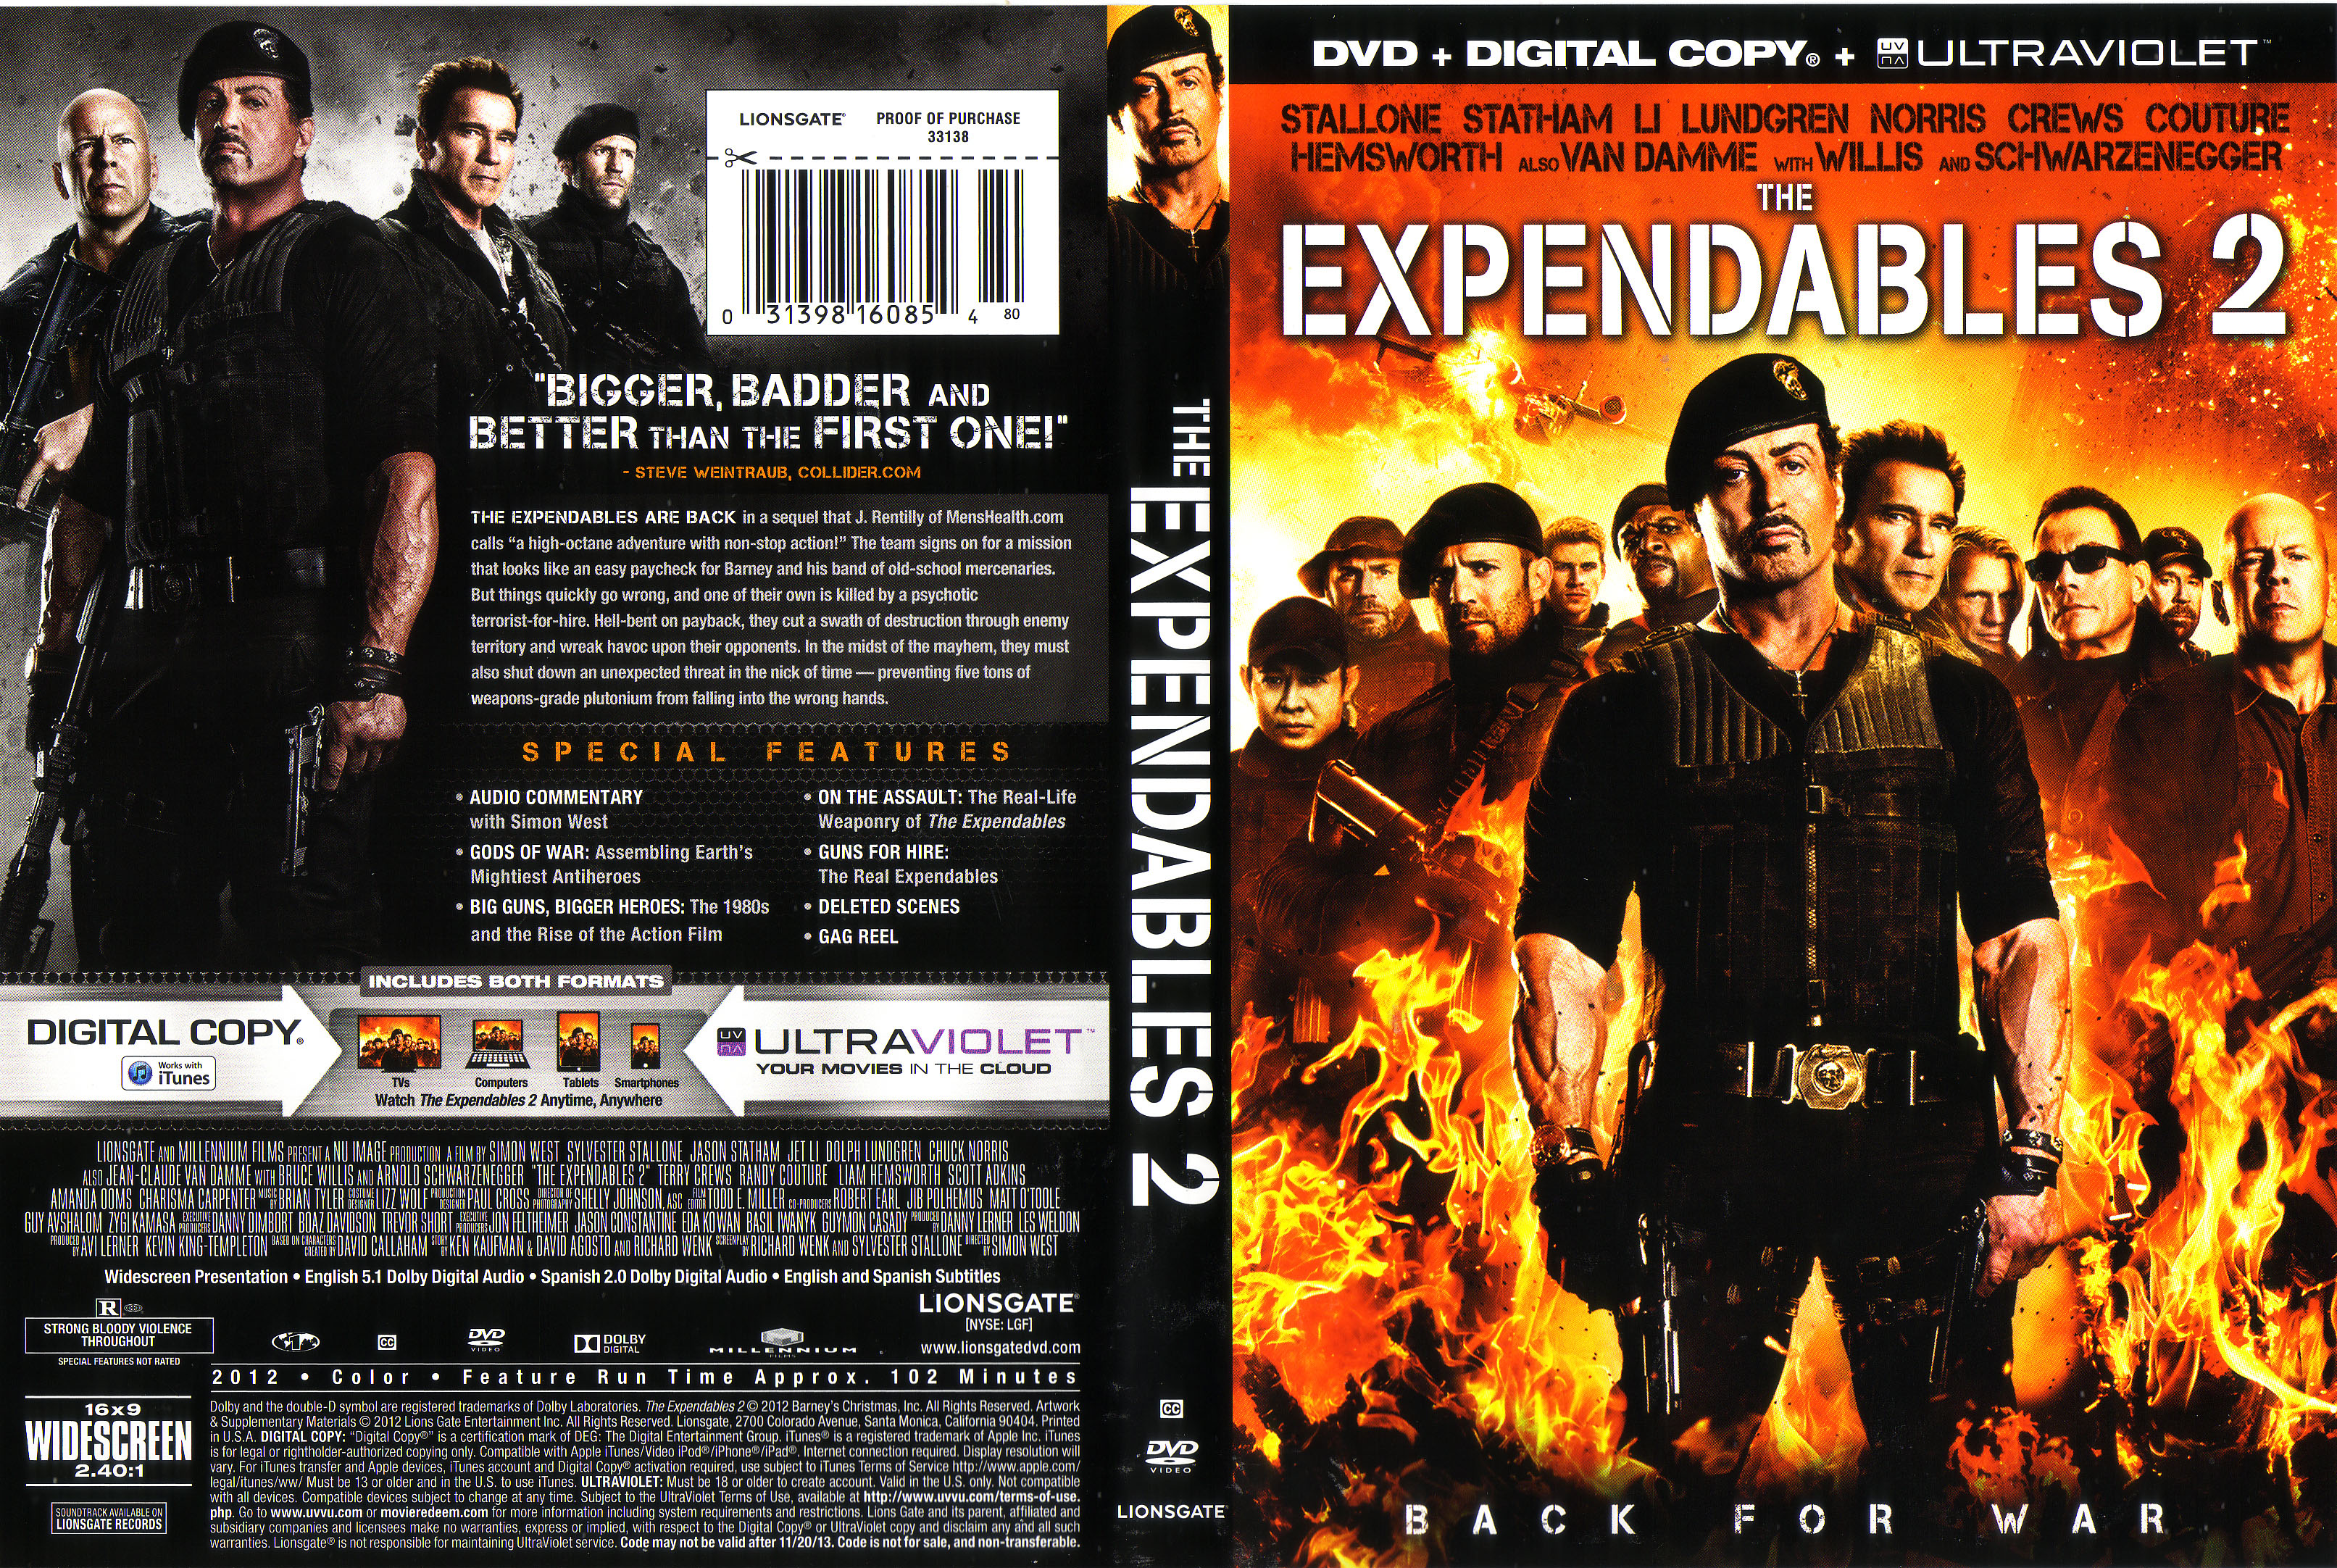 Неудержимый том 13 читать. The Expendables 2, 2012 DVD Cover. Чак Норрис Неудержимые 2. Неудержимые 2 2012 обложка диска DVD. Expendables DVD Cover.